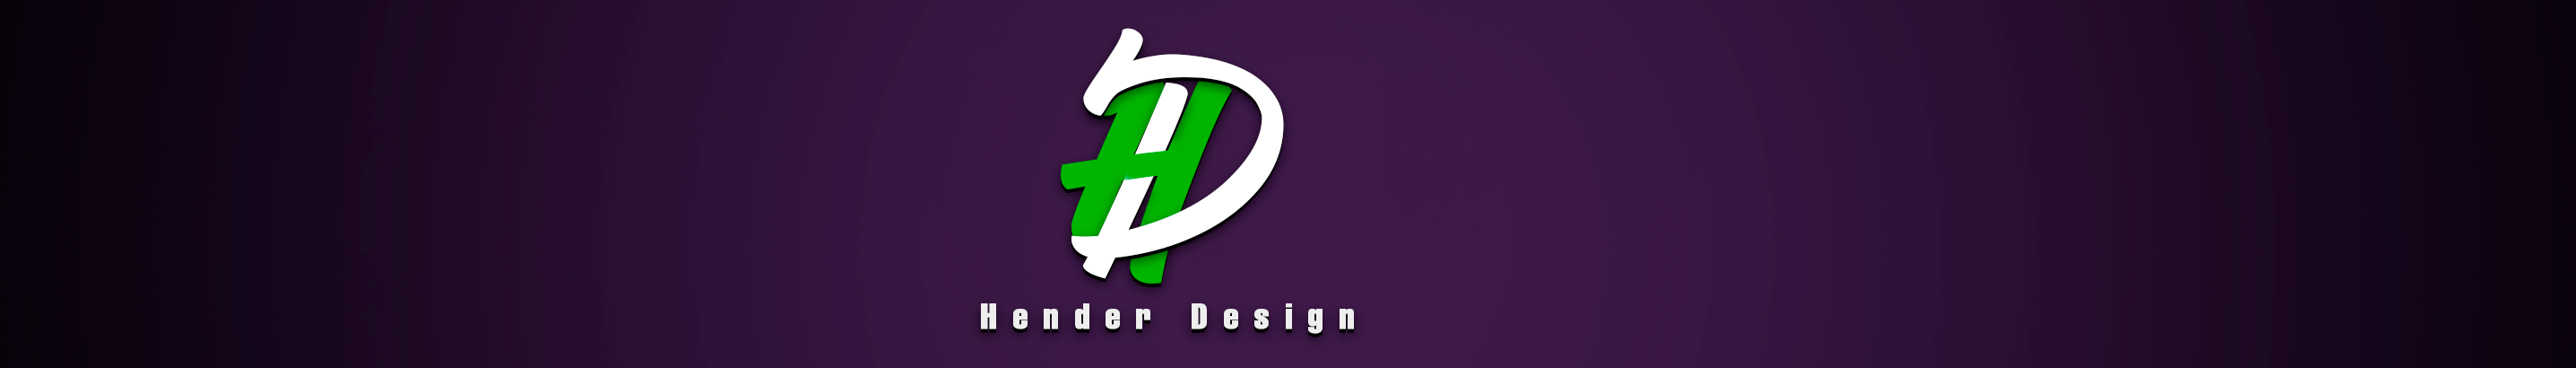 Hender Design's profile banner